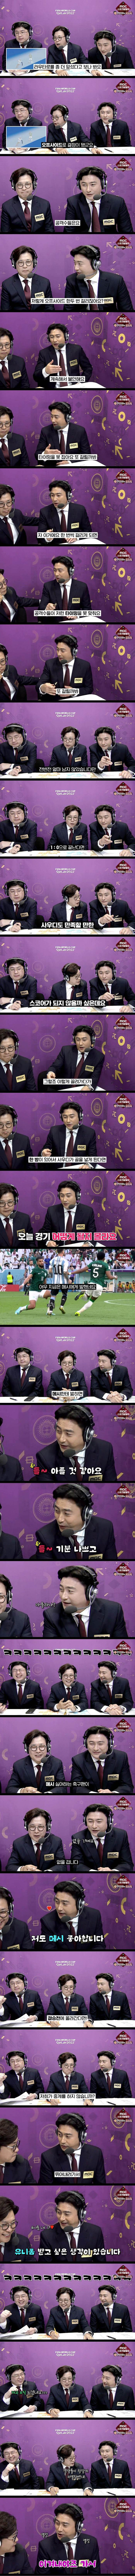 월드컵 MBC 중계진의 말말말